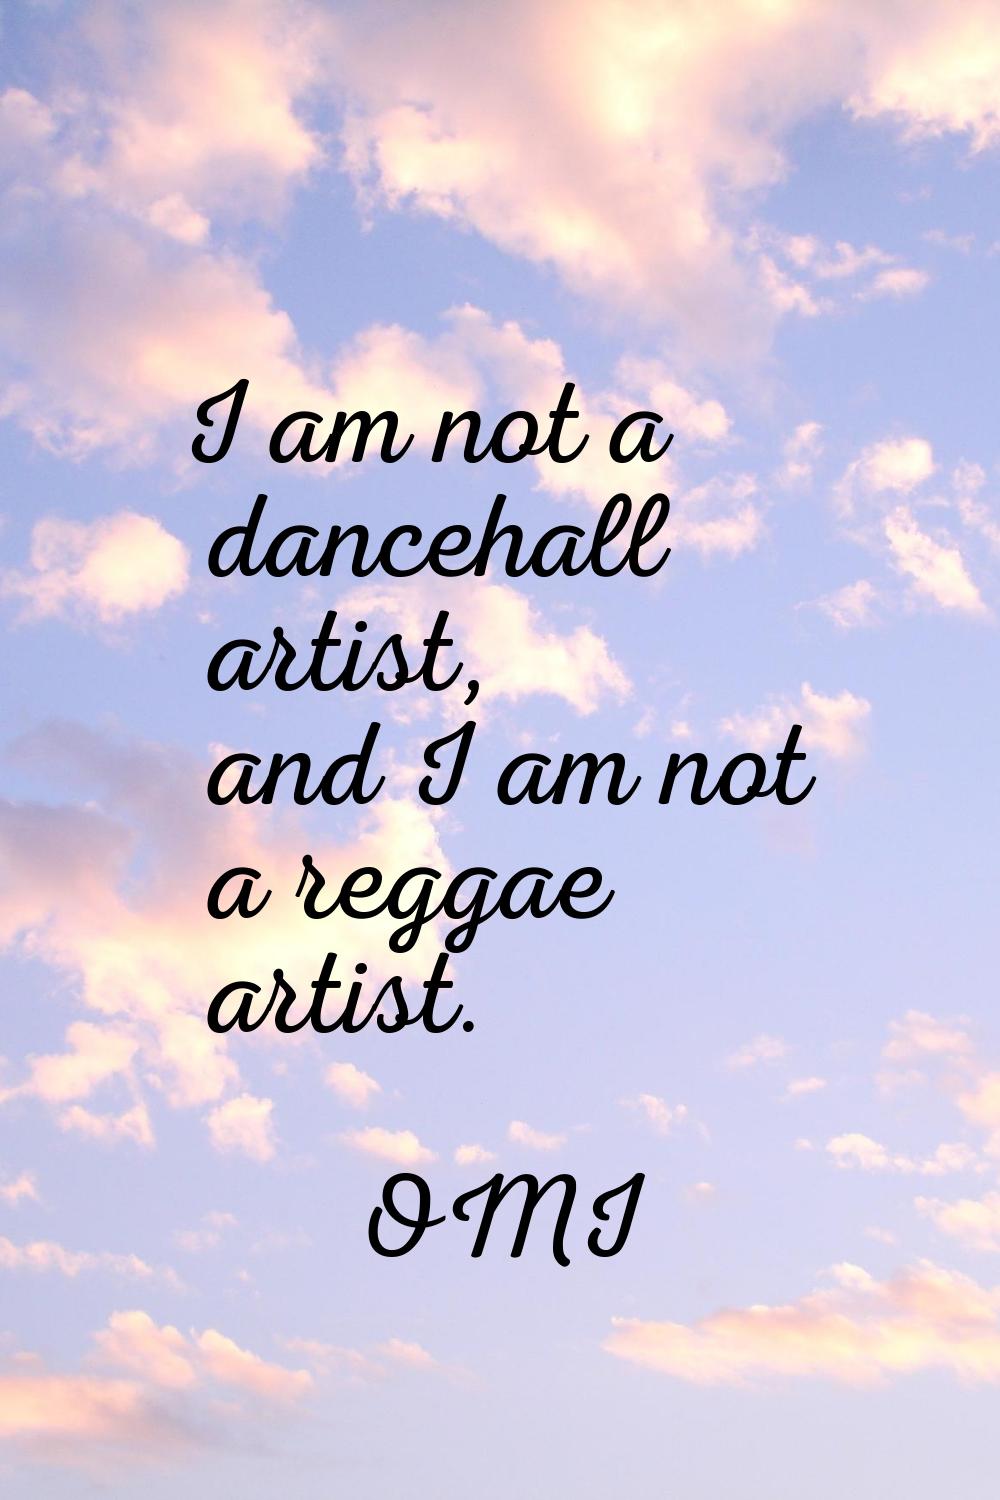 I am not a dancehall artist, and I am not a reggae artist.